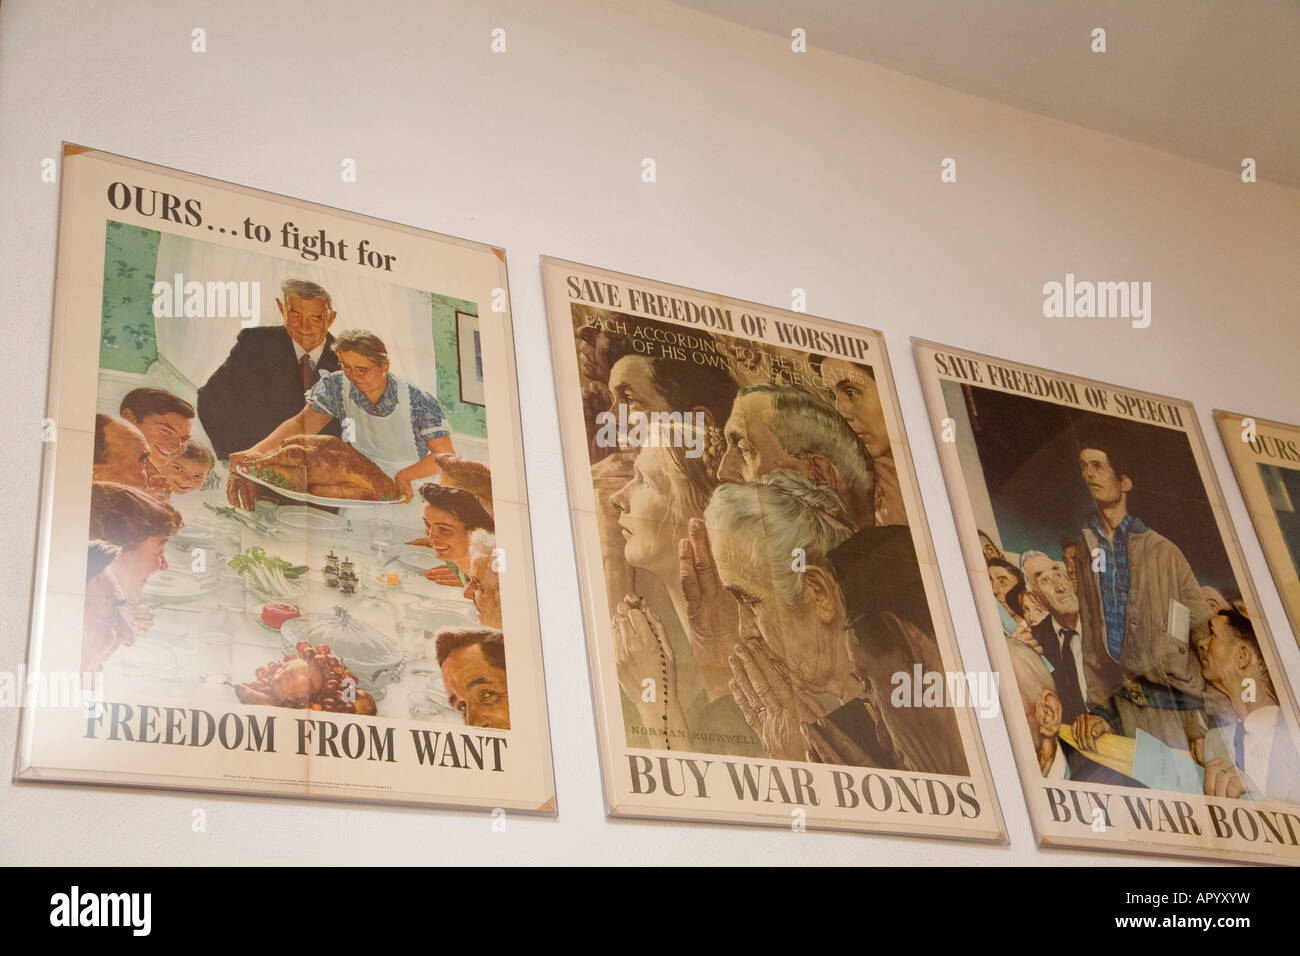 California Amboy acheter des obligations de guerre La Seconde Guerre mondiale, Norman Rockwell affiches Deux Illinois Central Depot Museum Banque D'Images